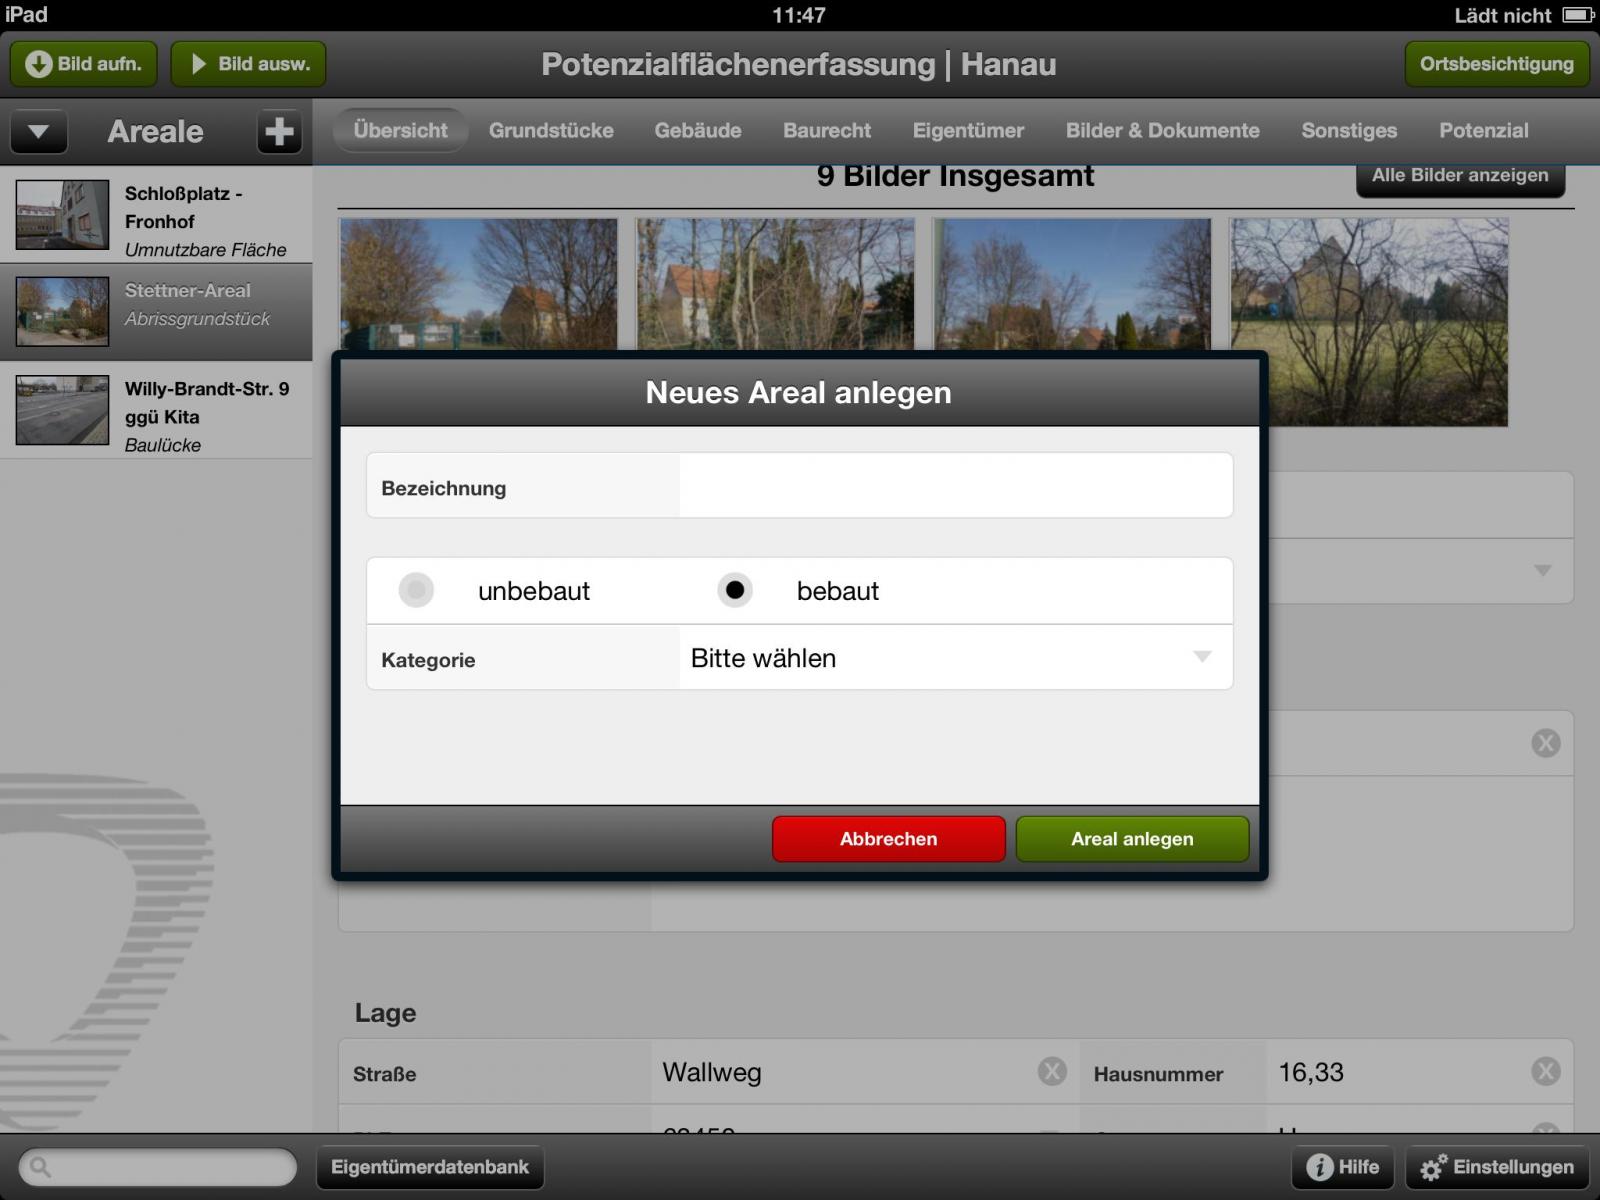 iPad-Anwendung zur Erfassung von Potenzialflächen